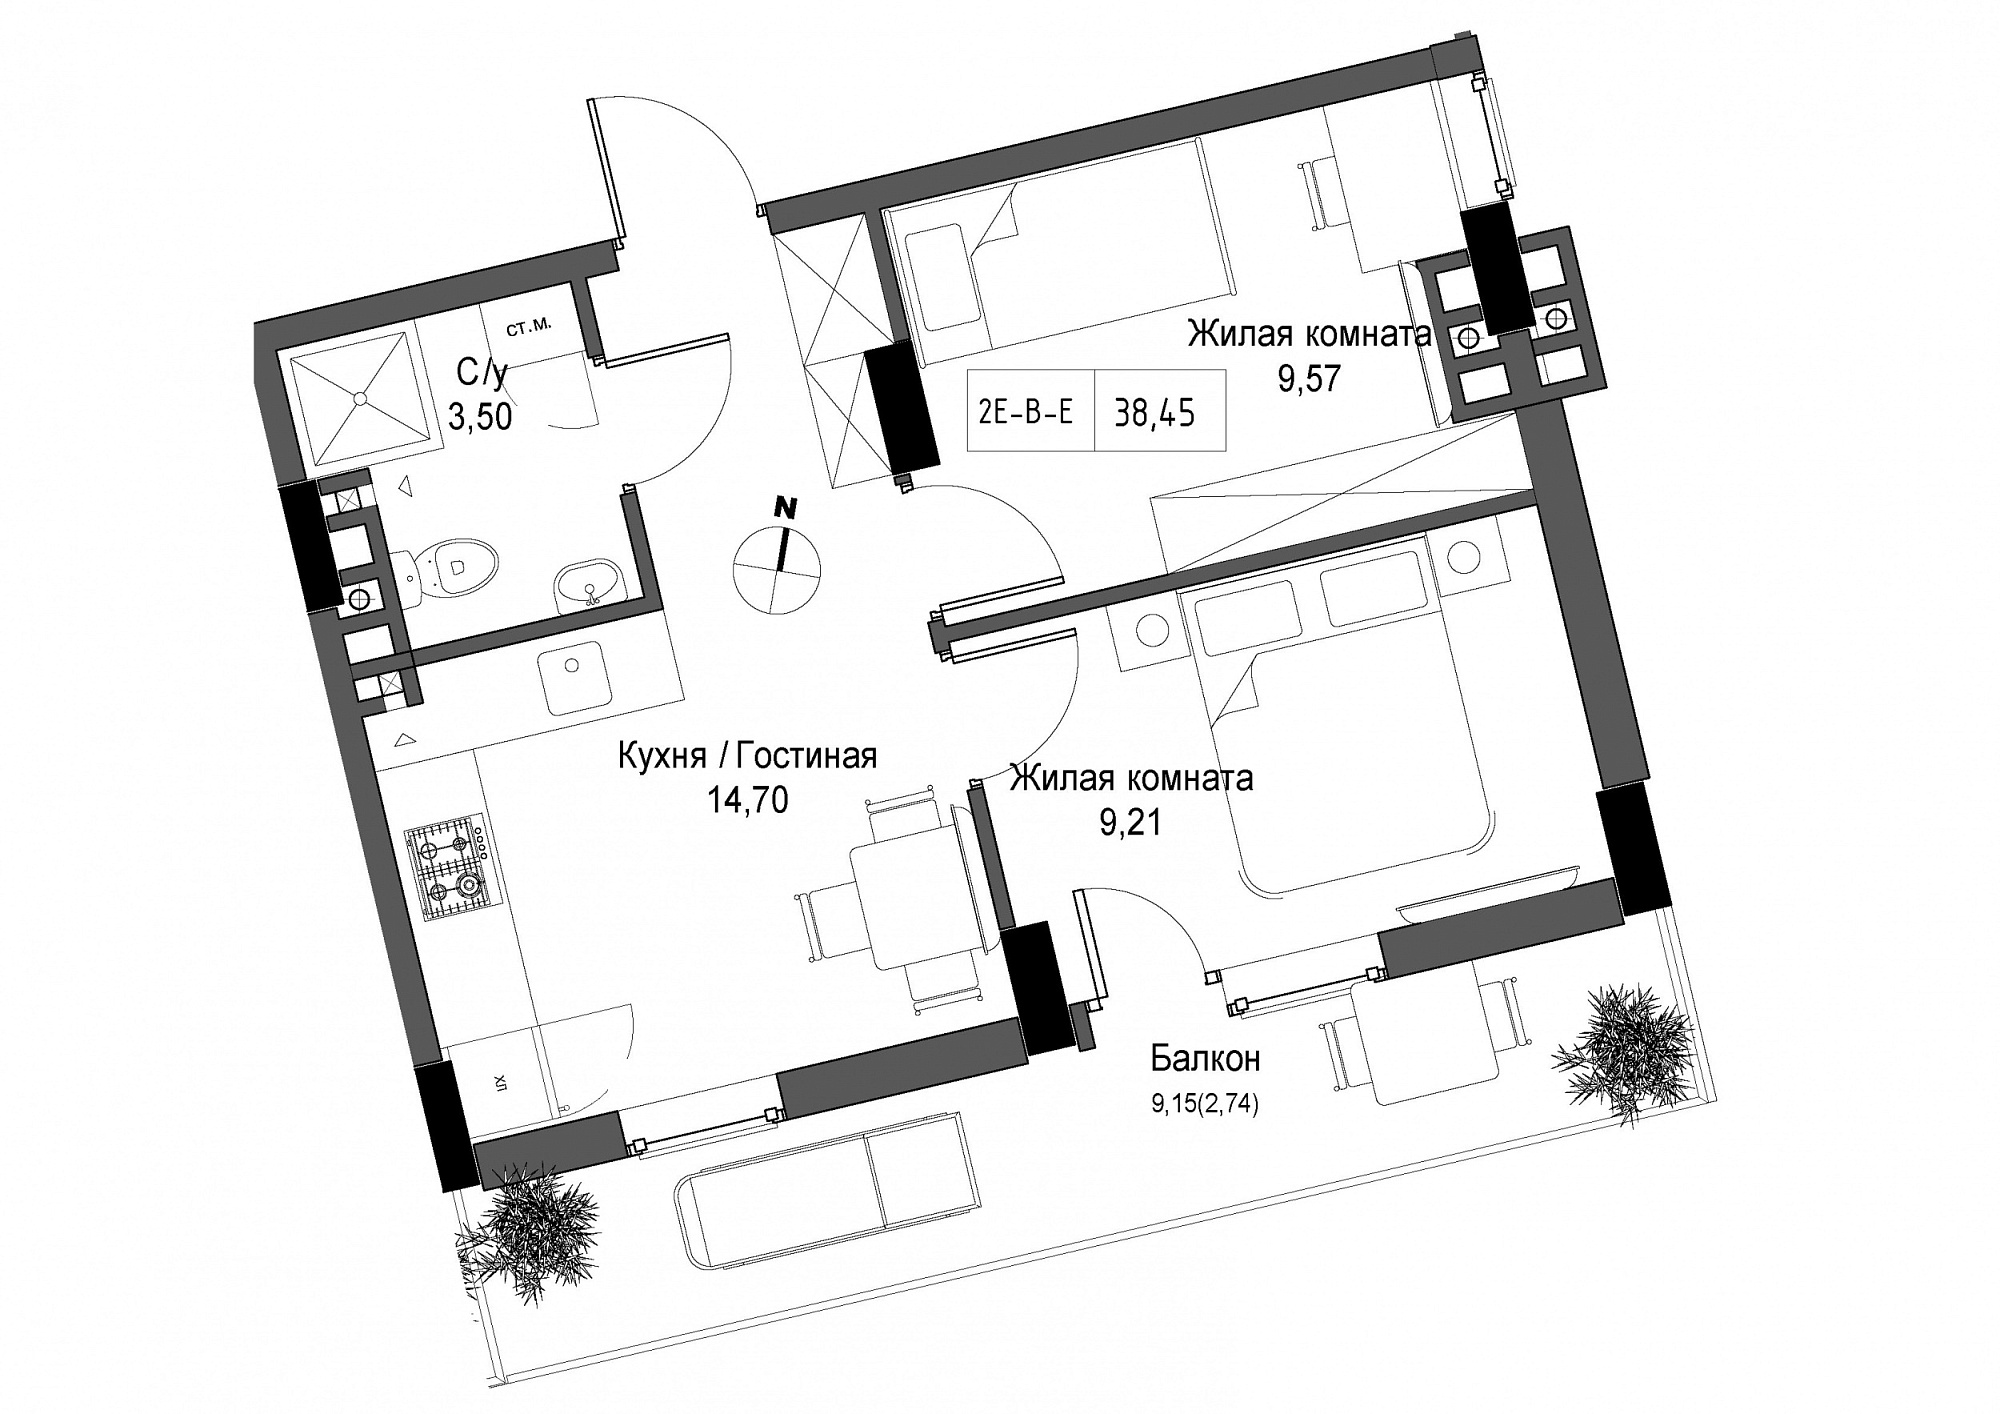 Планировка 2-к квартира площей 38.45м2, UM-004-07/0011.